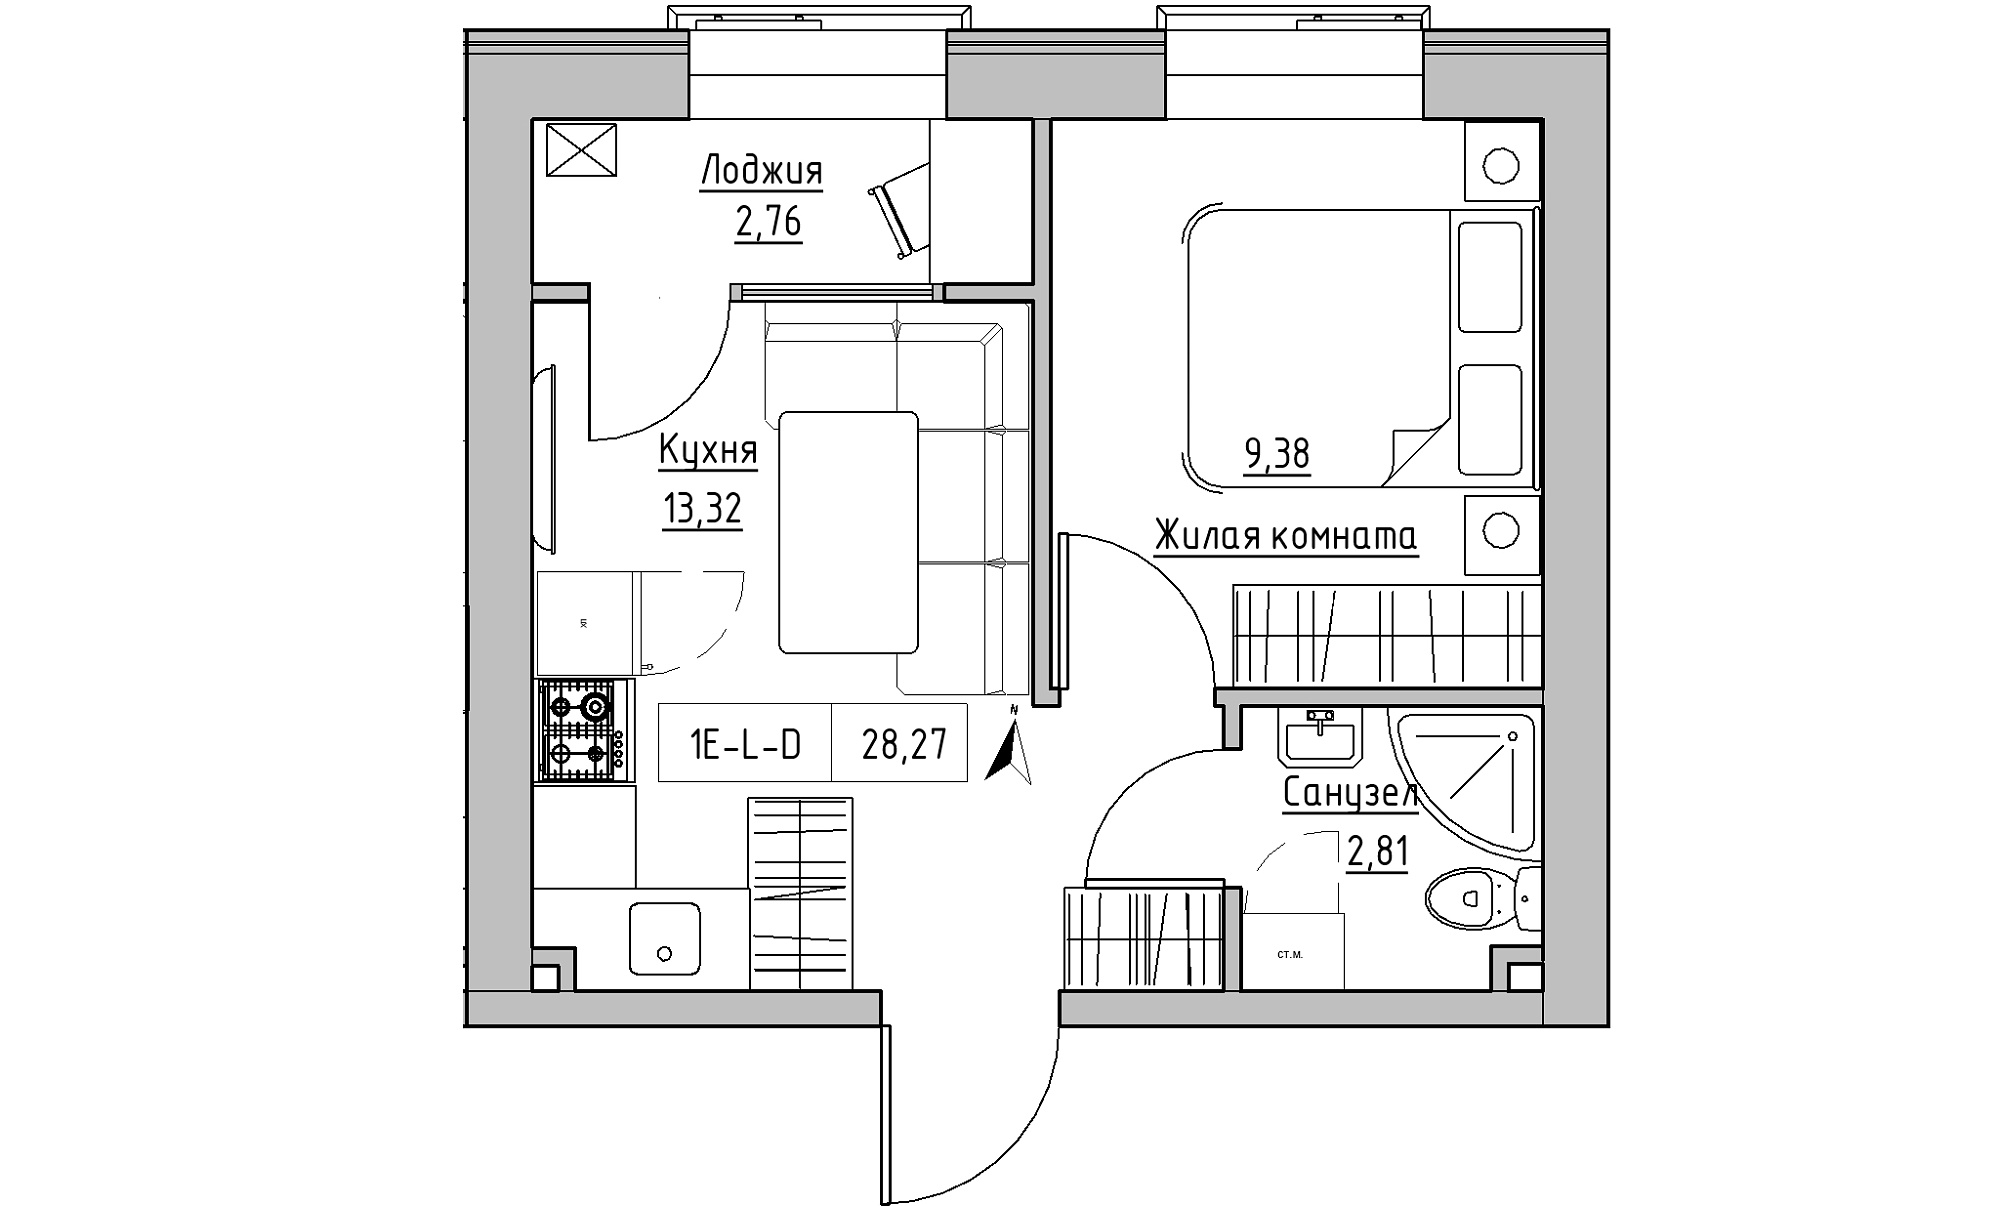 Планування 1-к квартира площею 28.27м2, KS-023-03/0017.